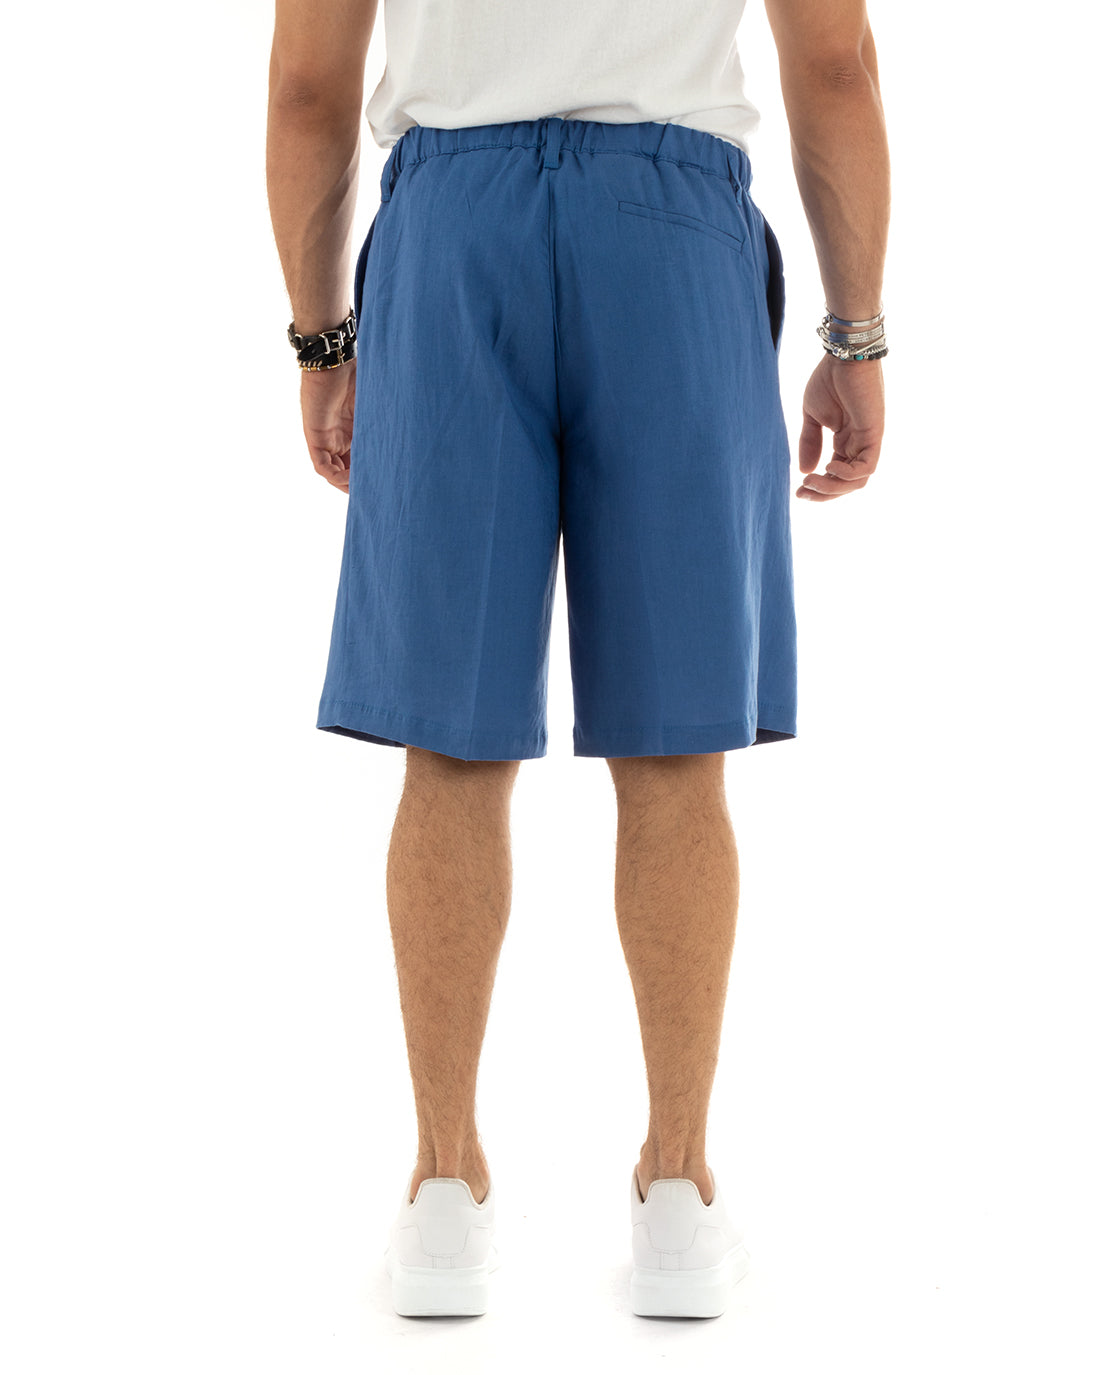 Bermuda Pantaloncino Uomo Corto Lino Tinta Unita Blu Royal Sartoriale Con Laccetto GIOSAL-PC1927A